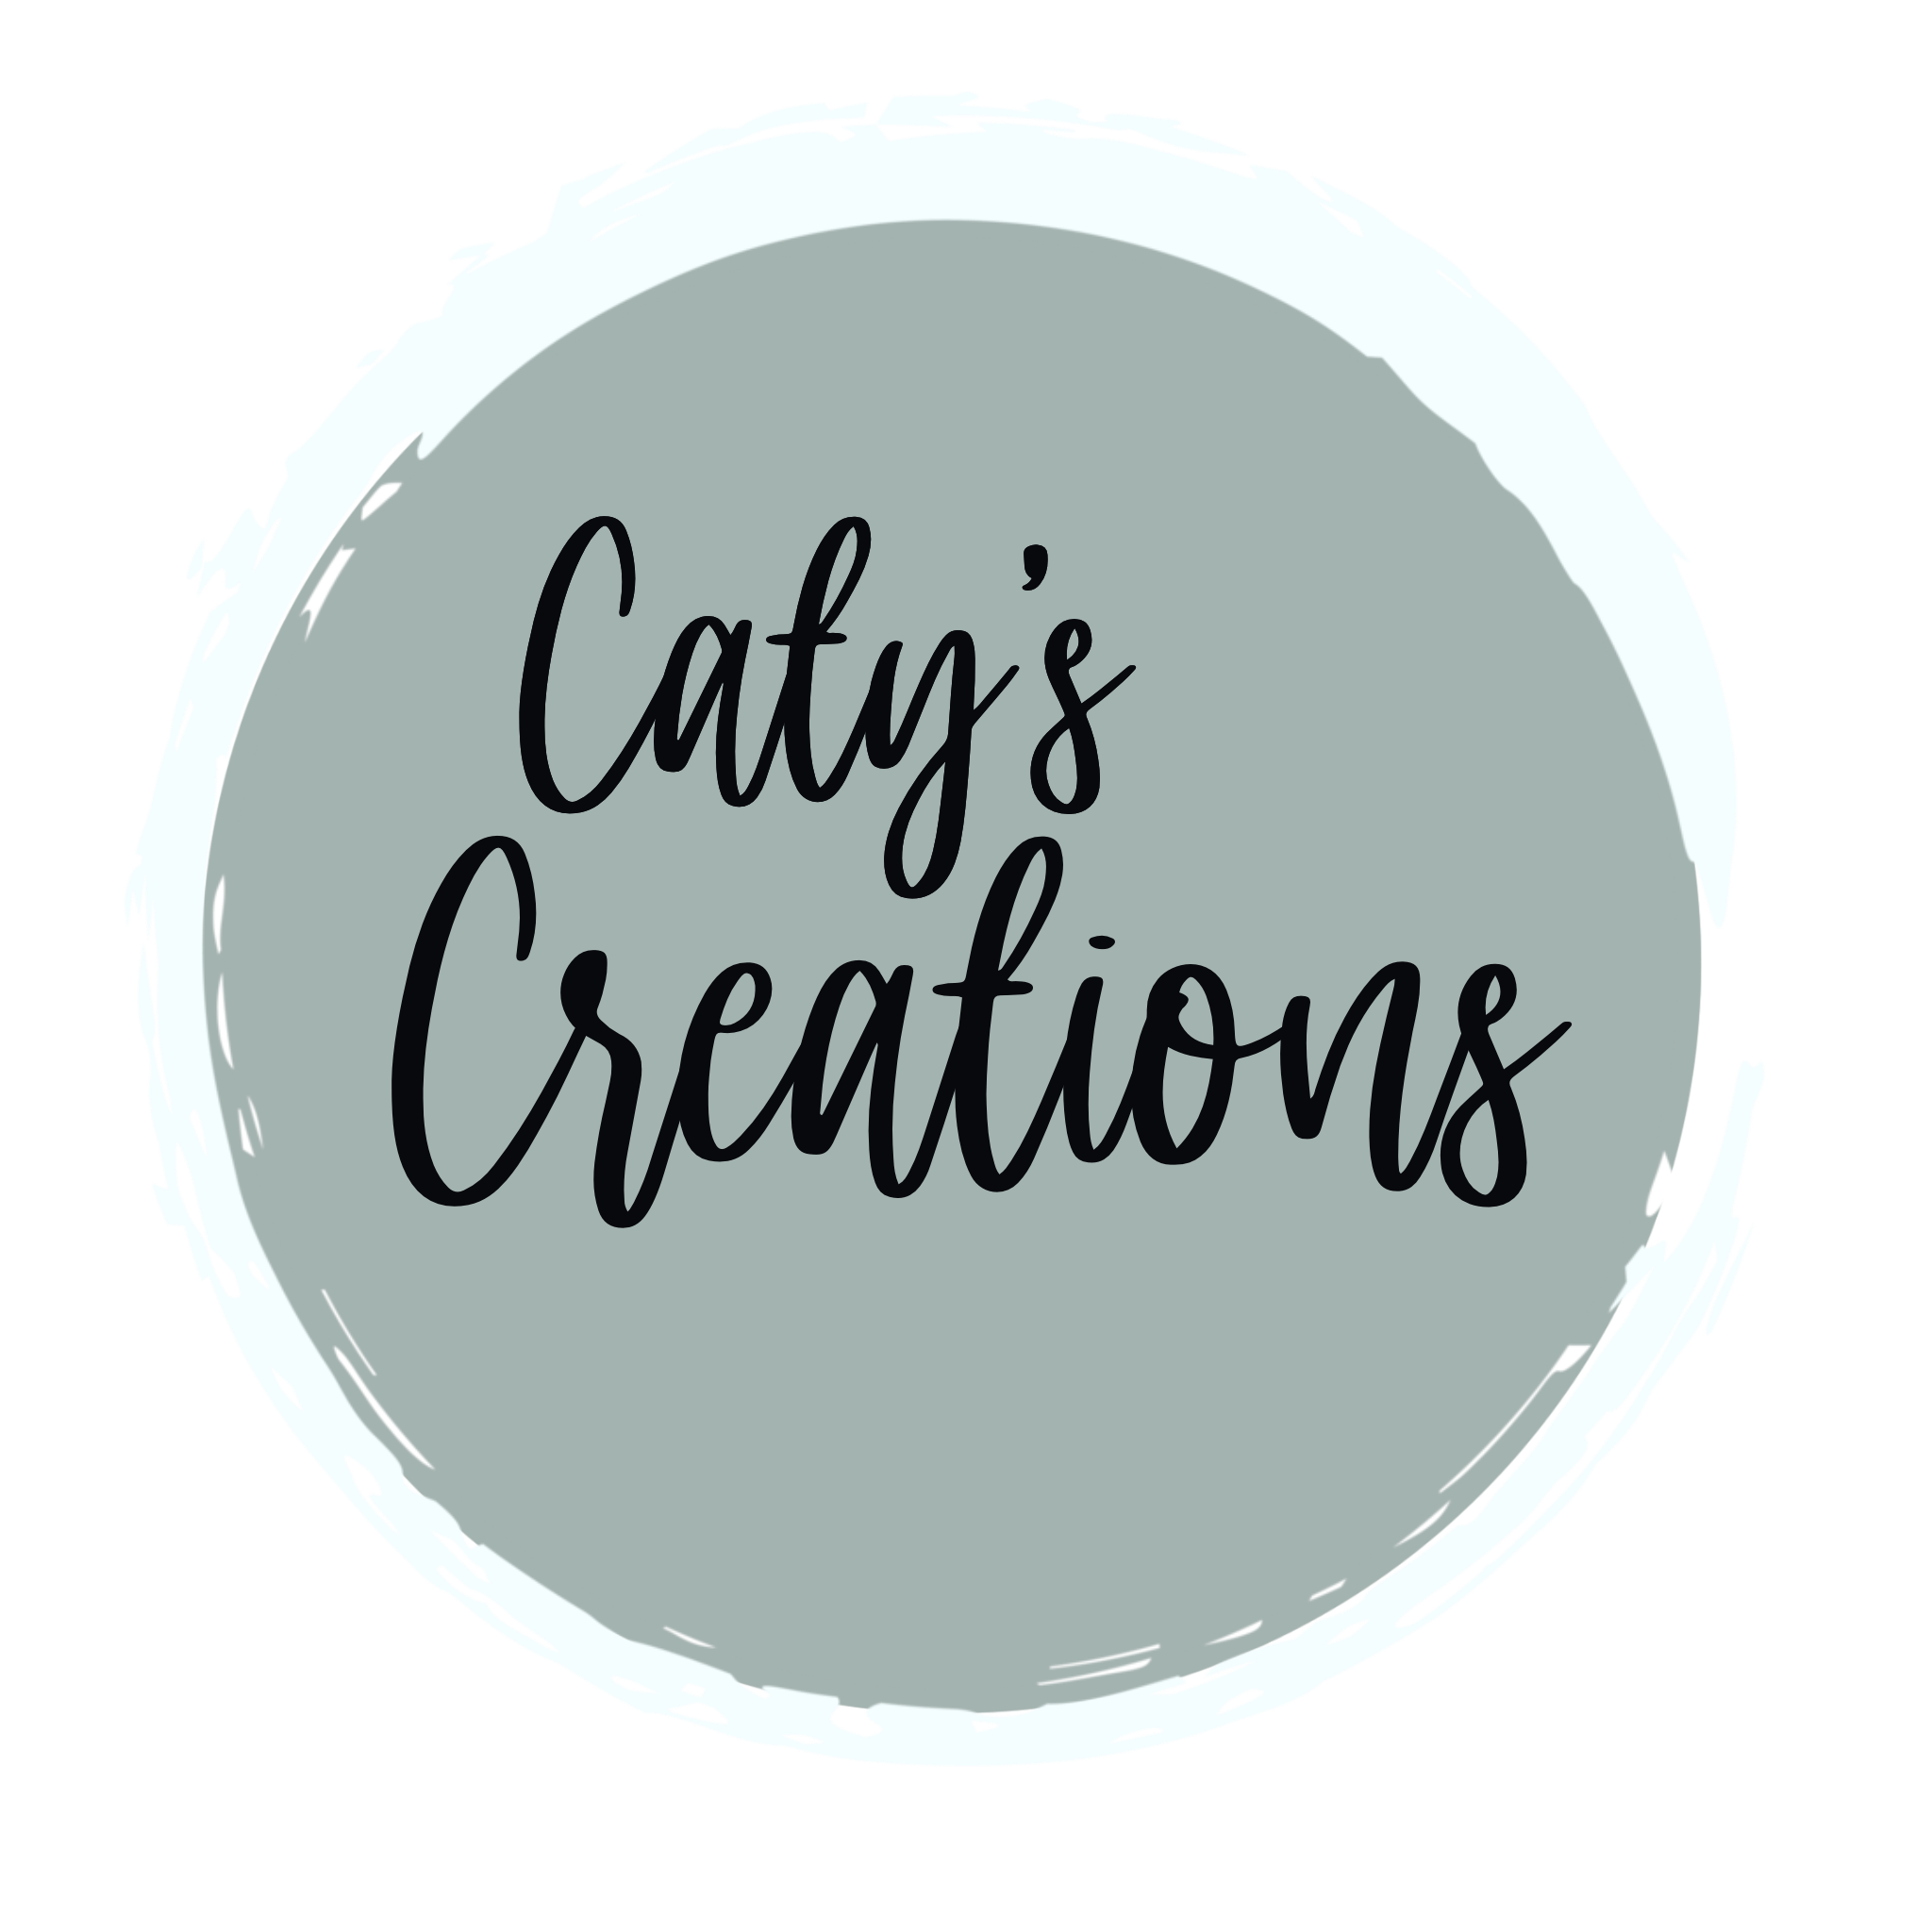 Caty's Creations